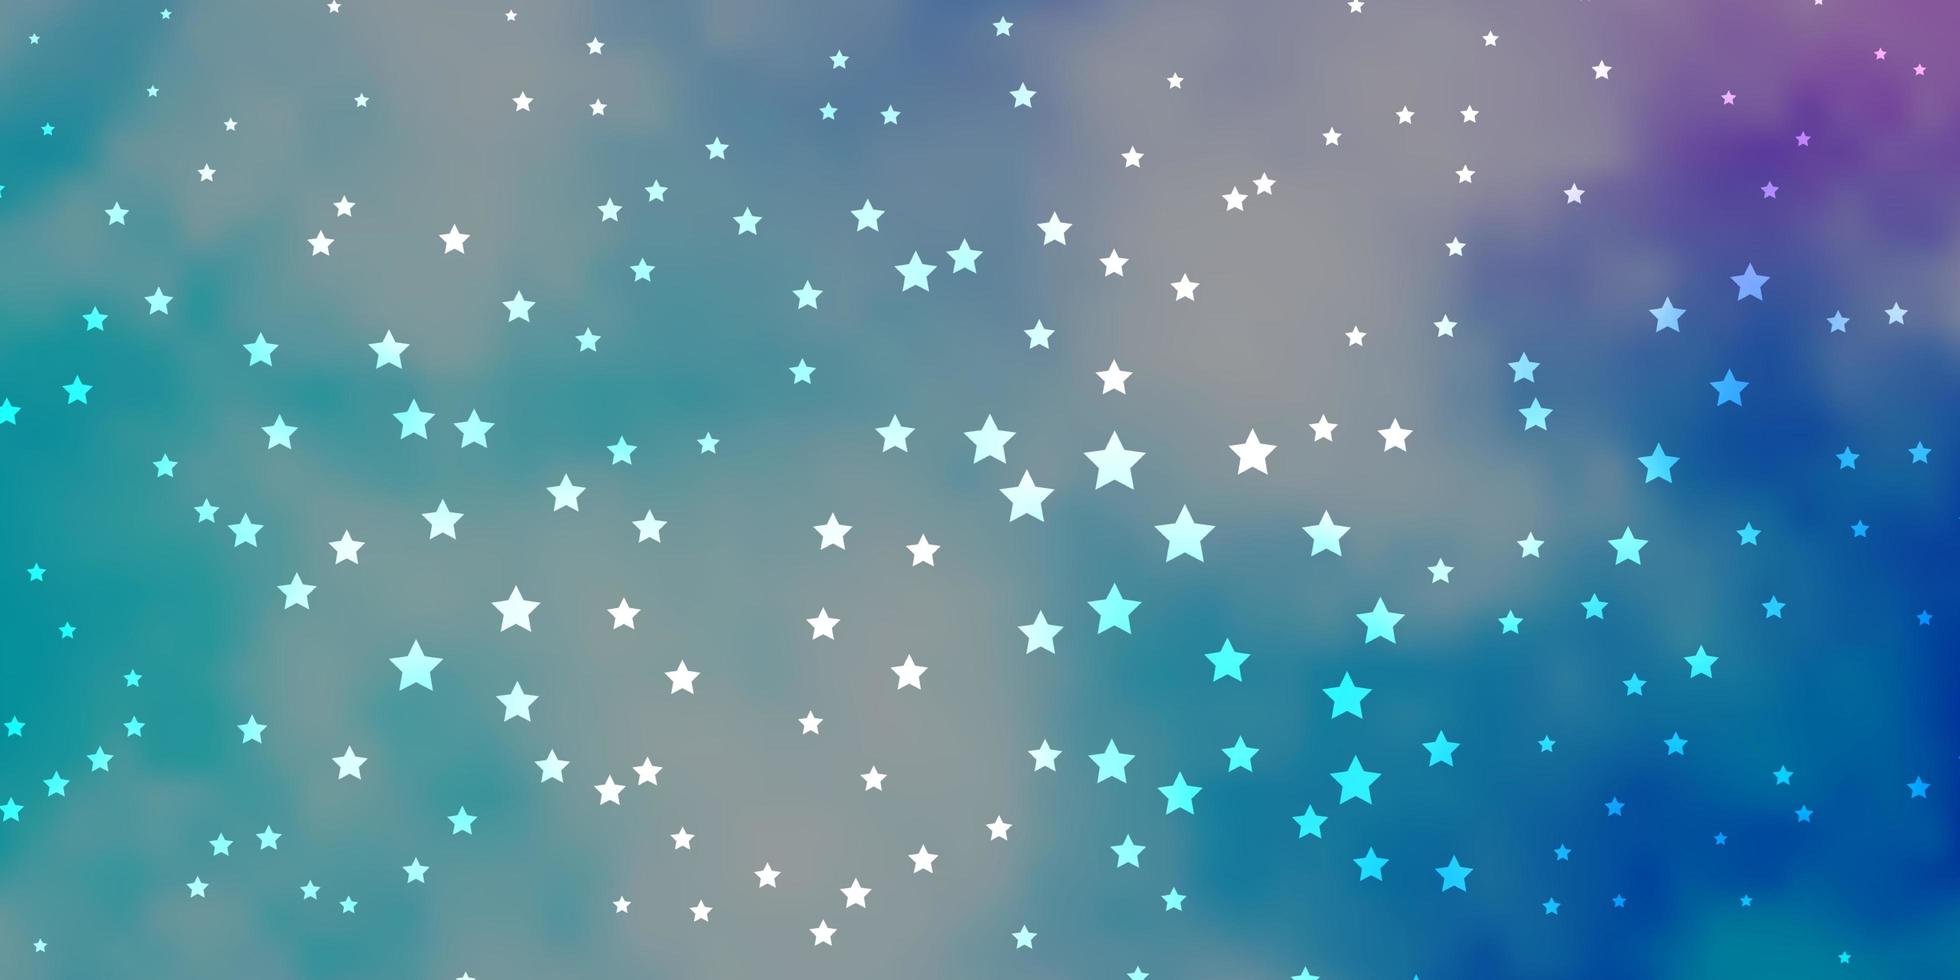 donkerroze, blauwe vectortextuur met prachtige sterren. decoratieve illustratie met sterren op abstracte sjabloon. patroon voor nieuwjaarsadvertentie, boekjes. vector